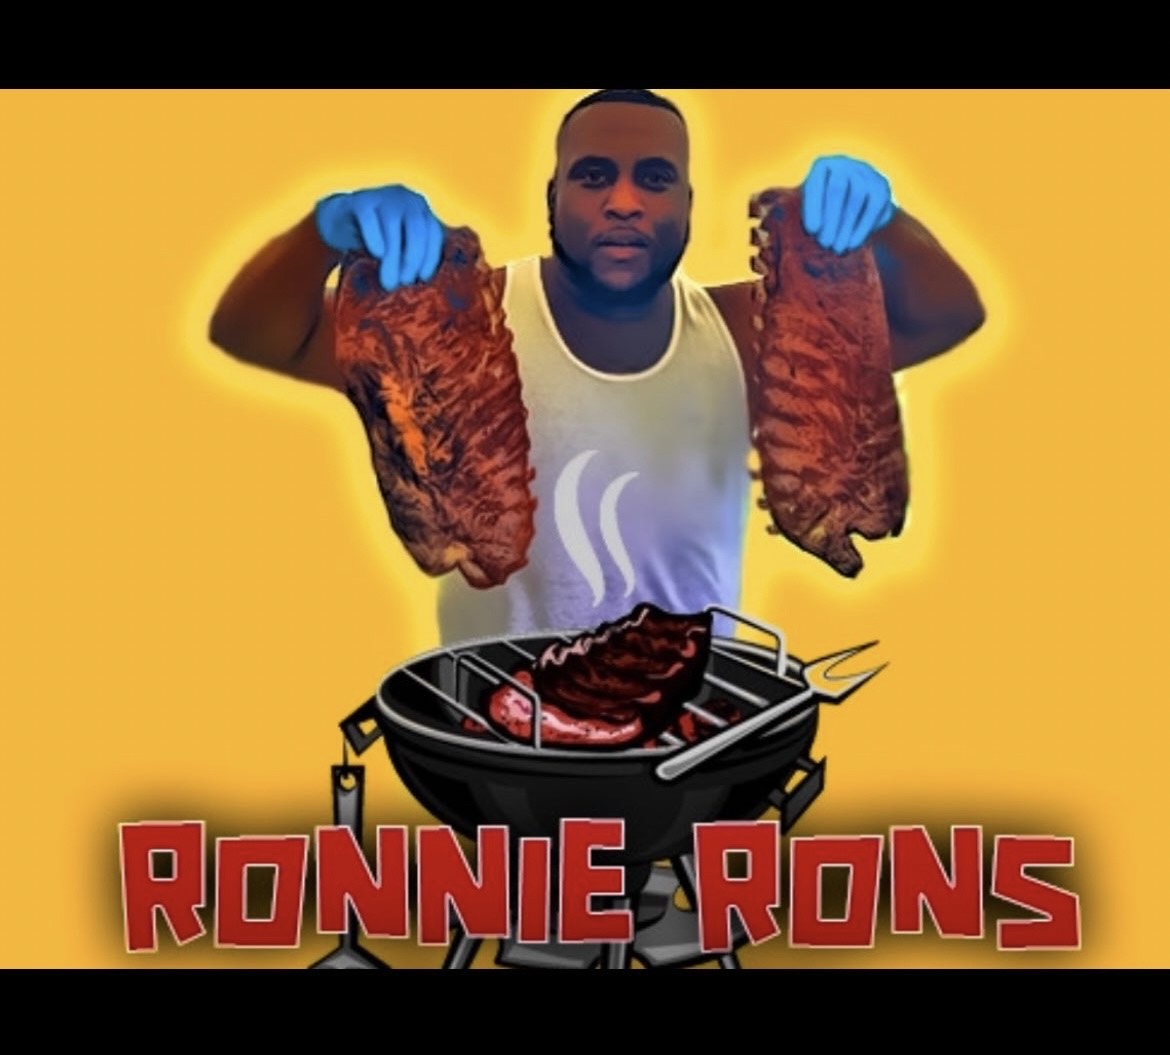 Ronnie Ron’s